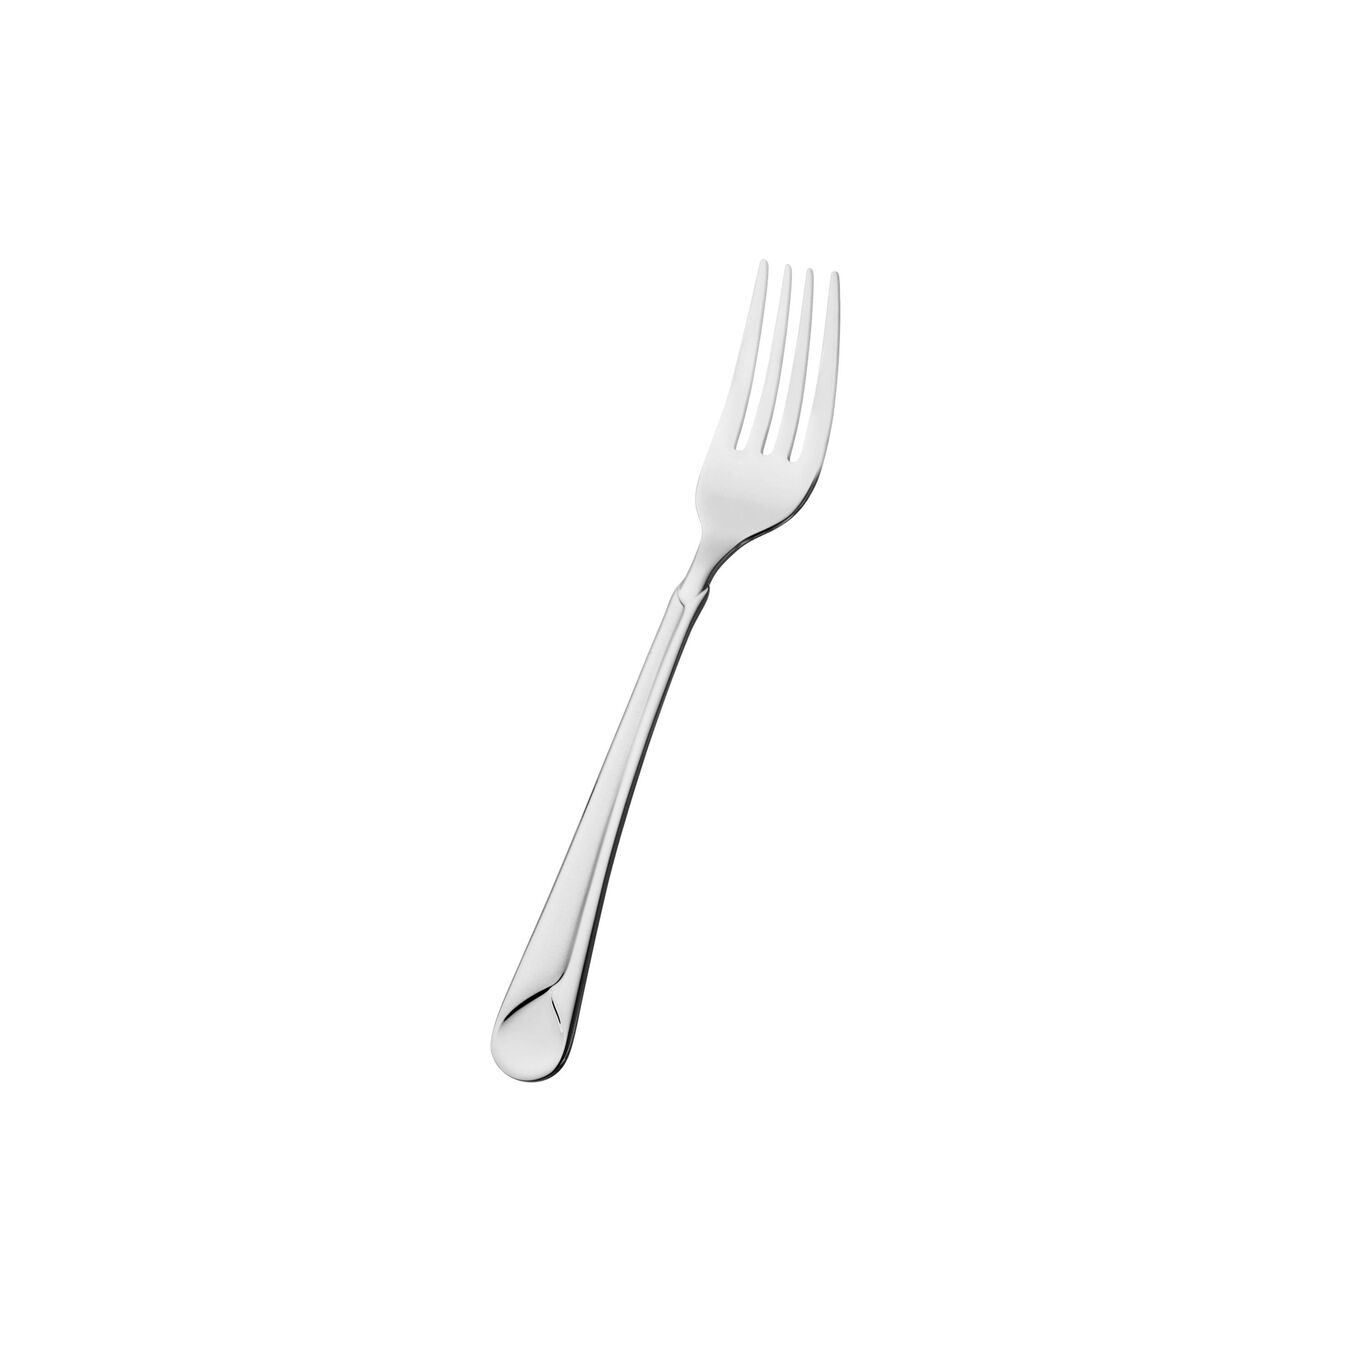 Salad fork,,large 1